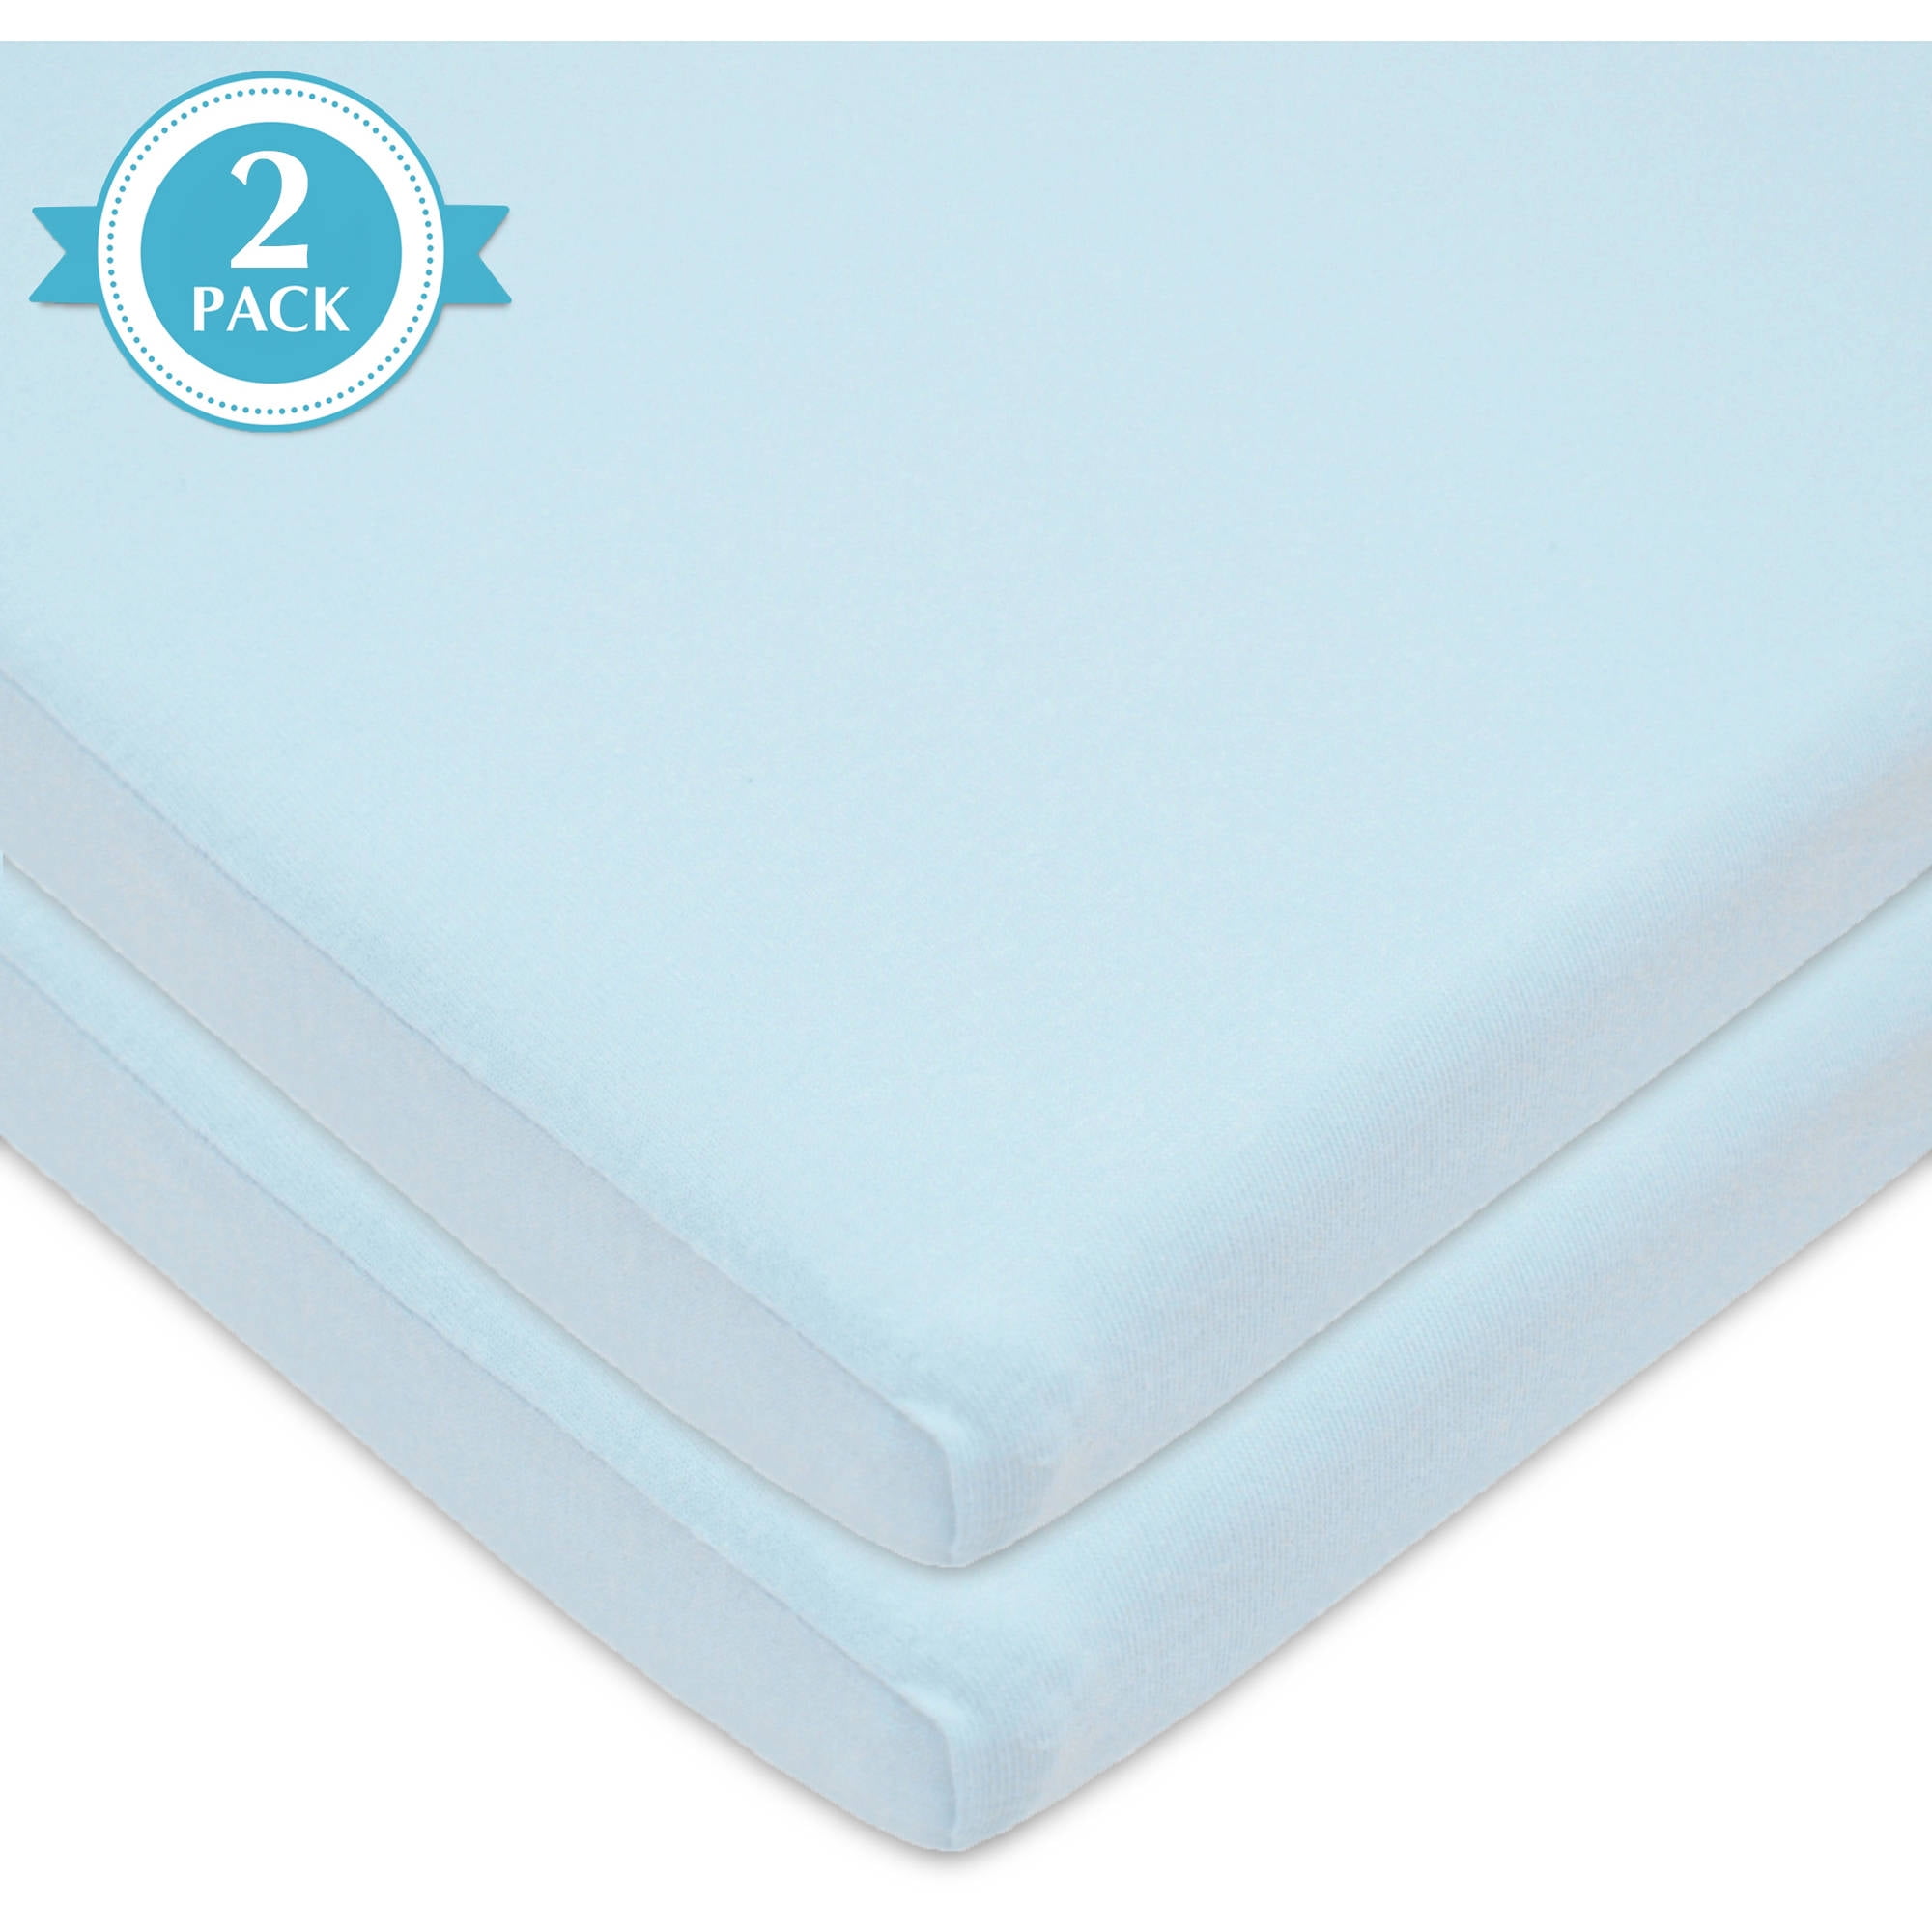 cradle mattress sheets